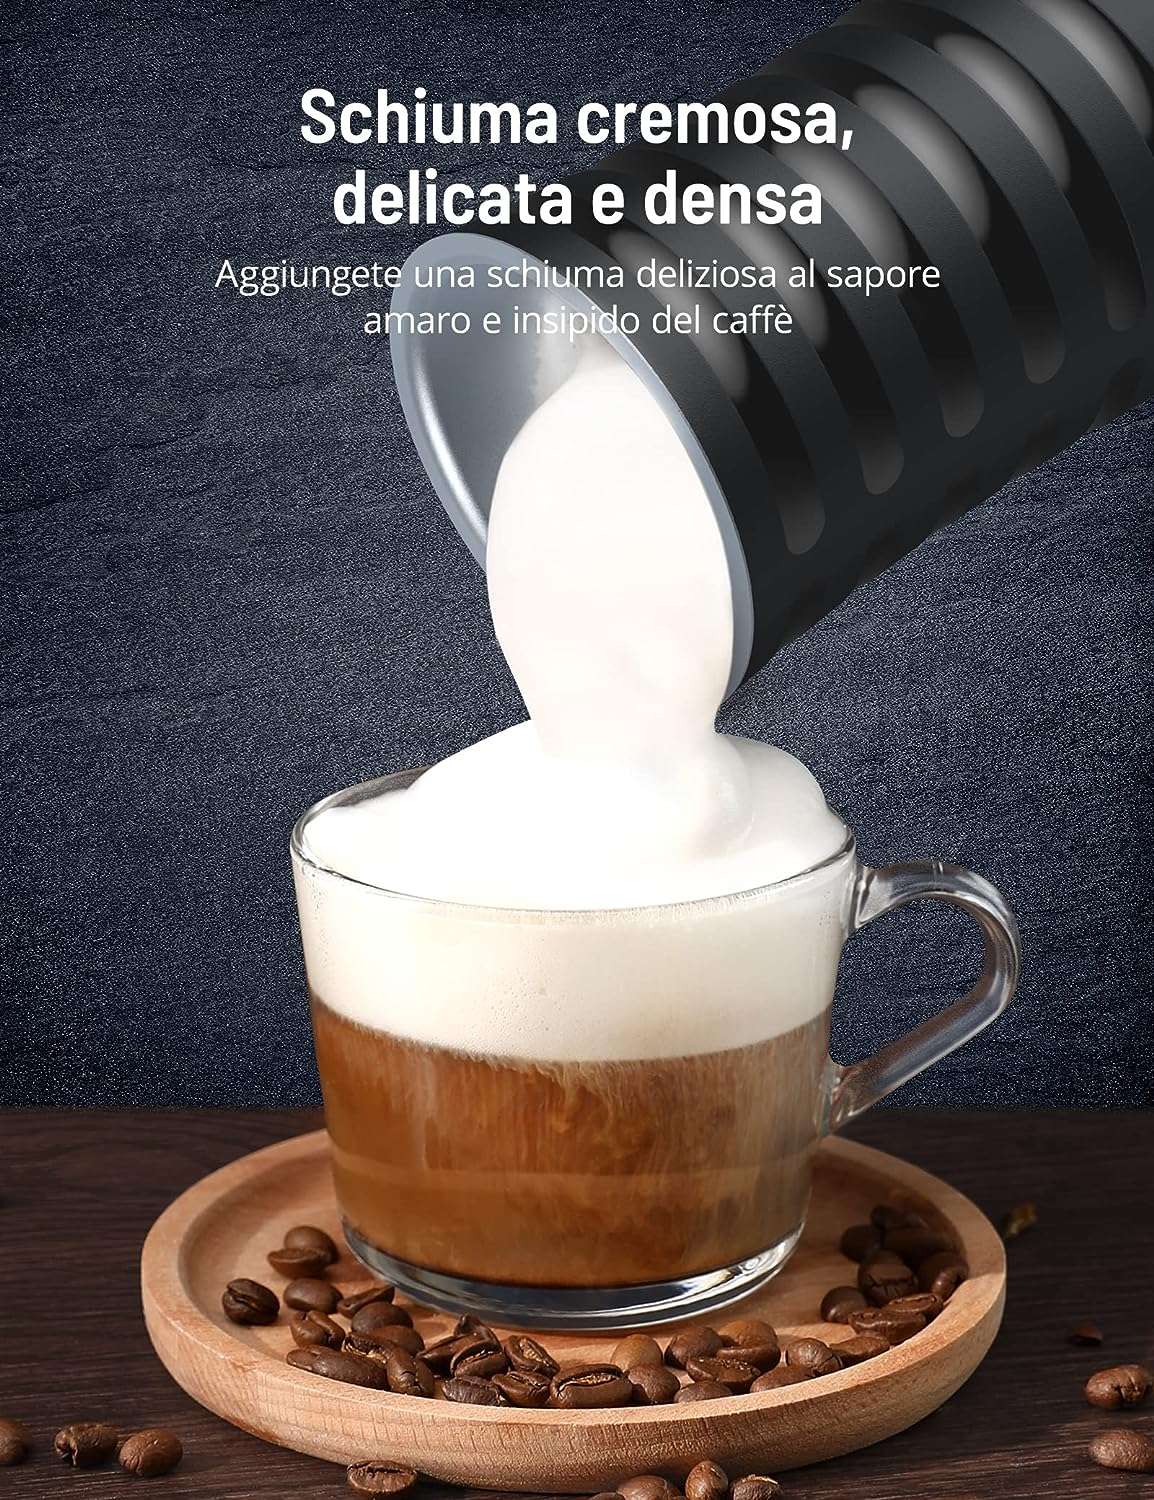 montalatte-elettrico-cappuccino-buonissimo-39e-amazon-schiuma